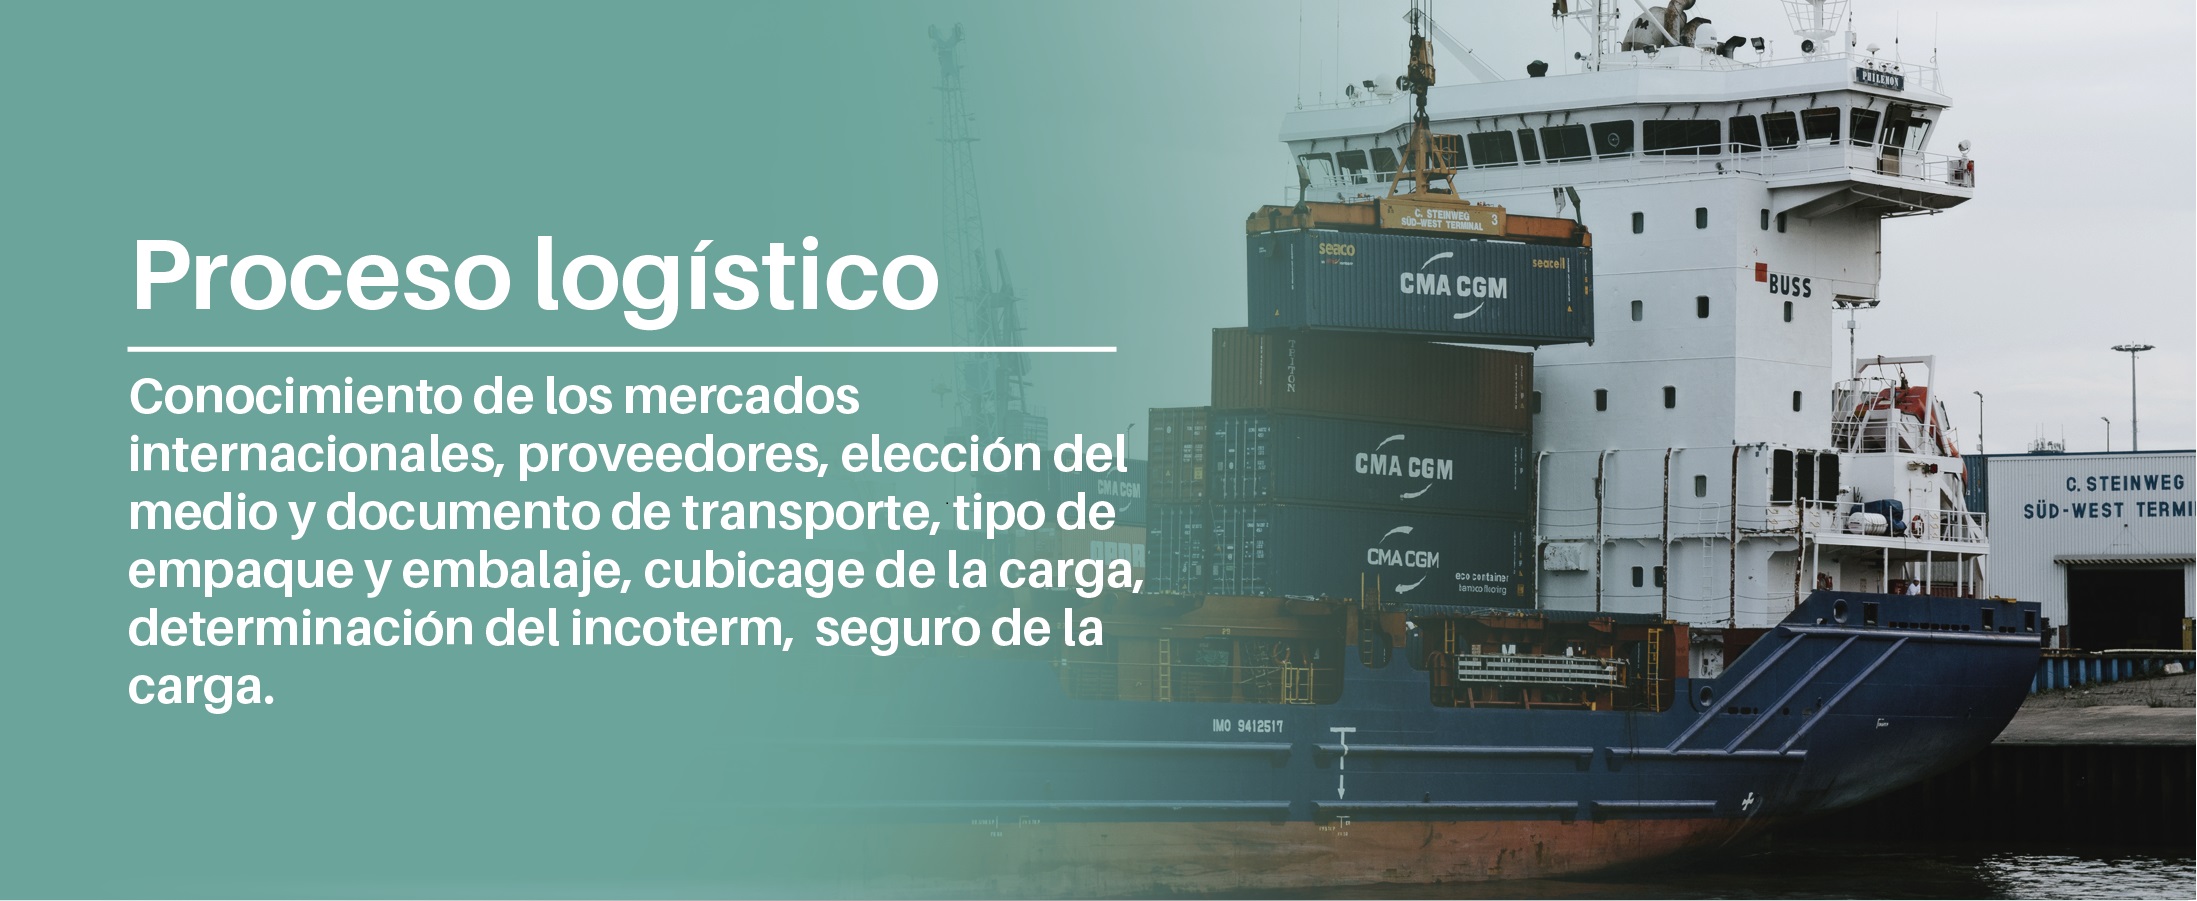 Proceso logístico - Conocimiento de los mercados internacionales, proveedores, elección del medio y documento de transporte